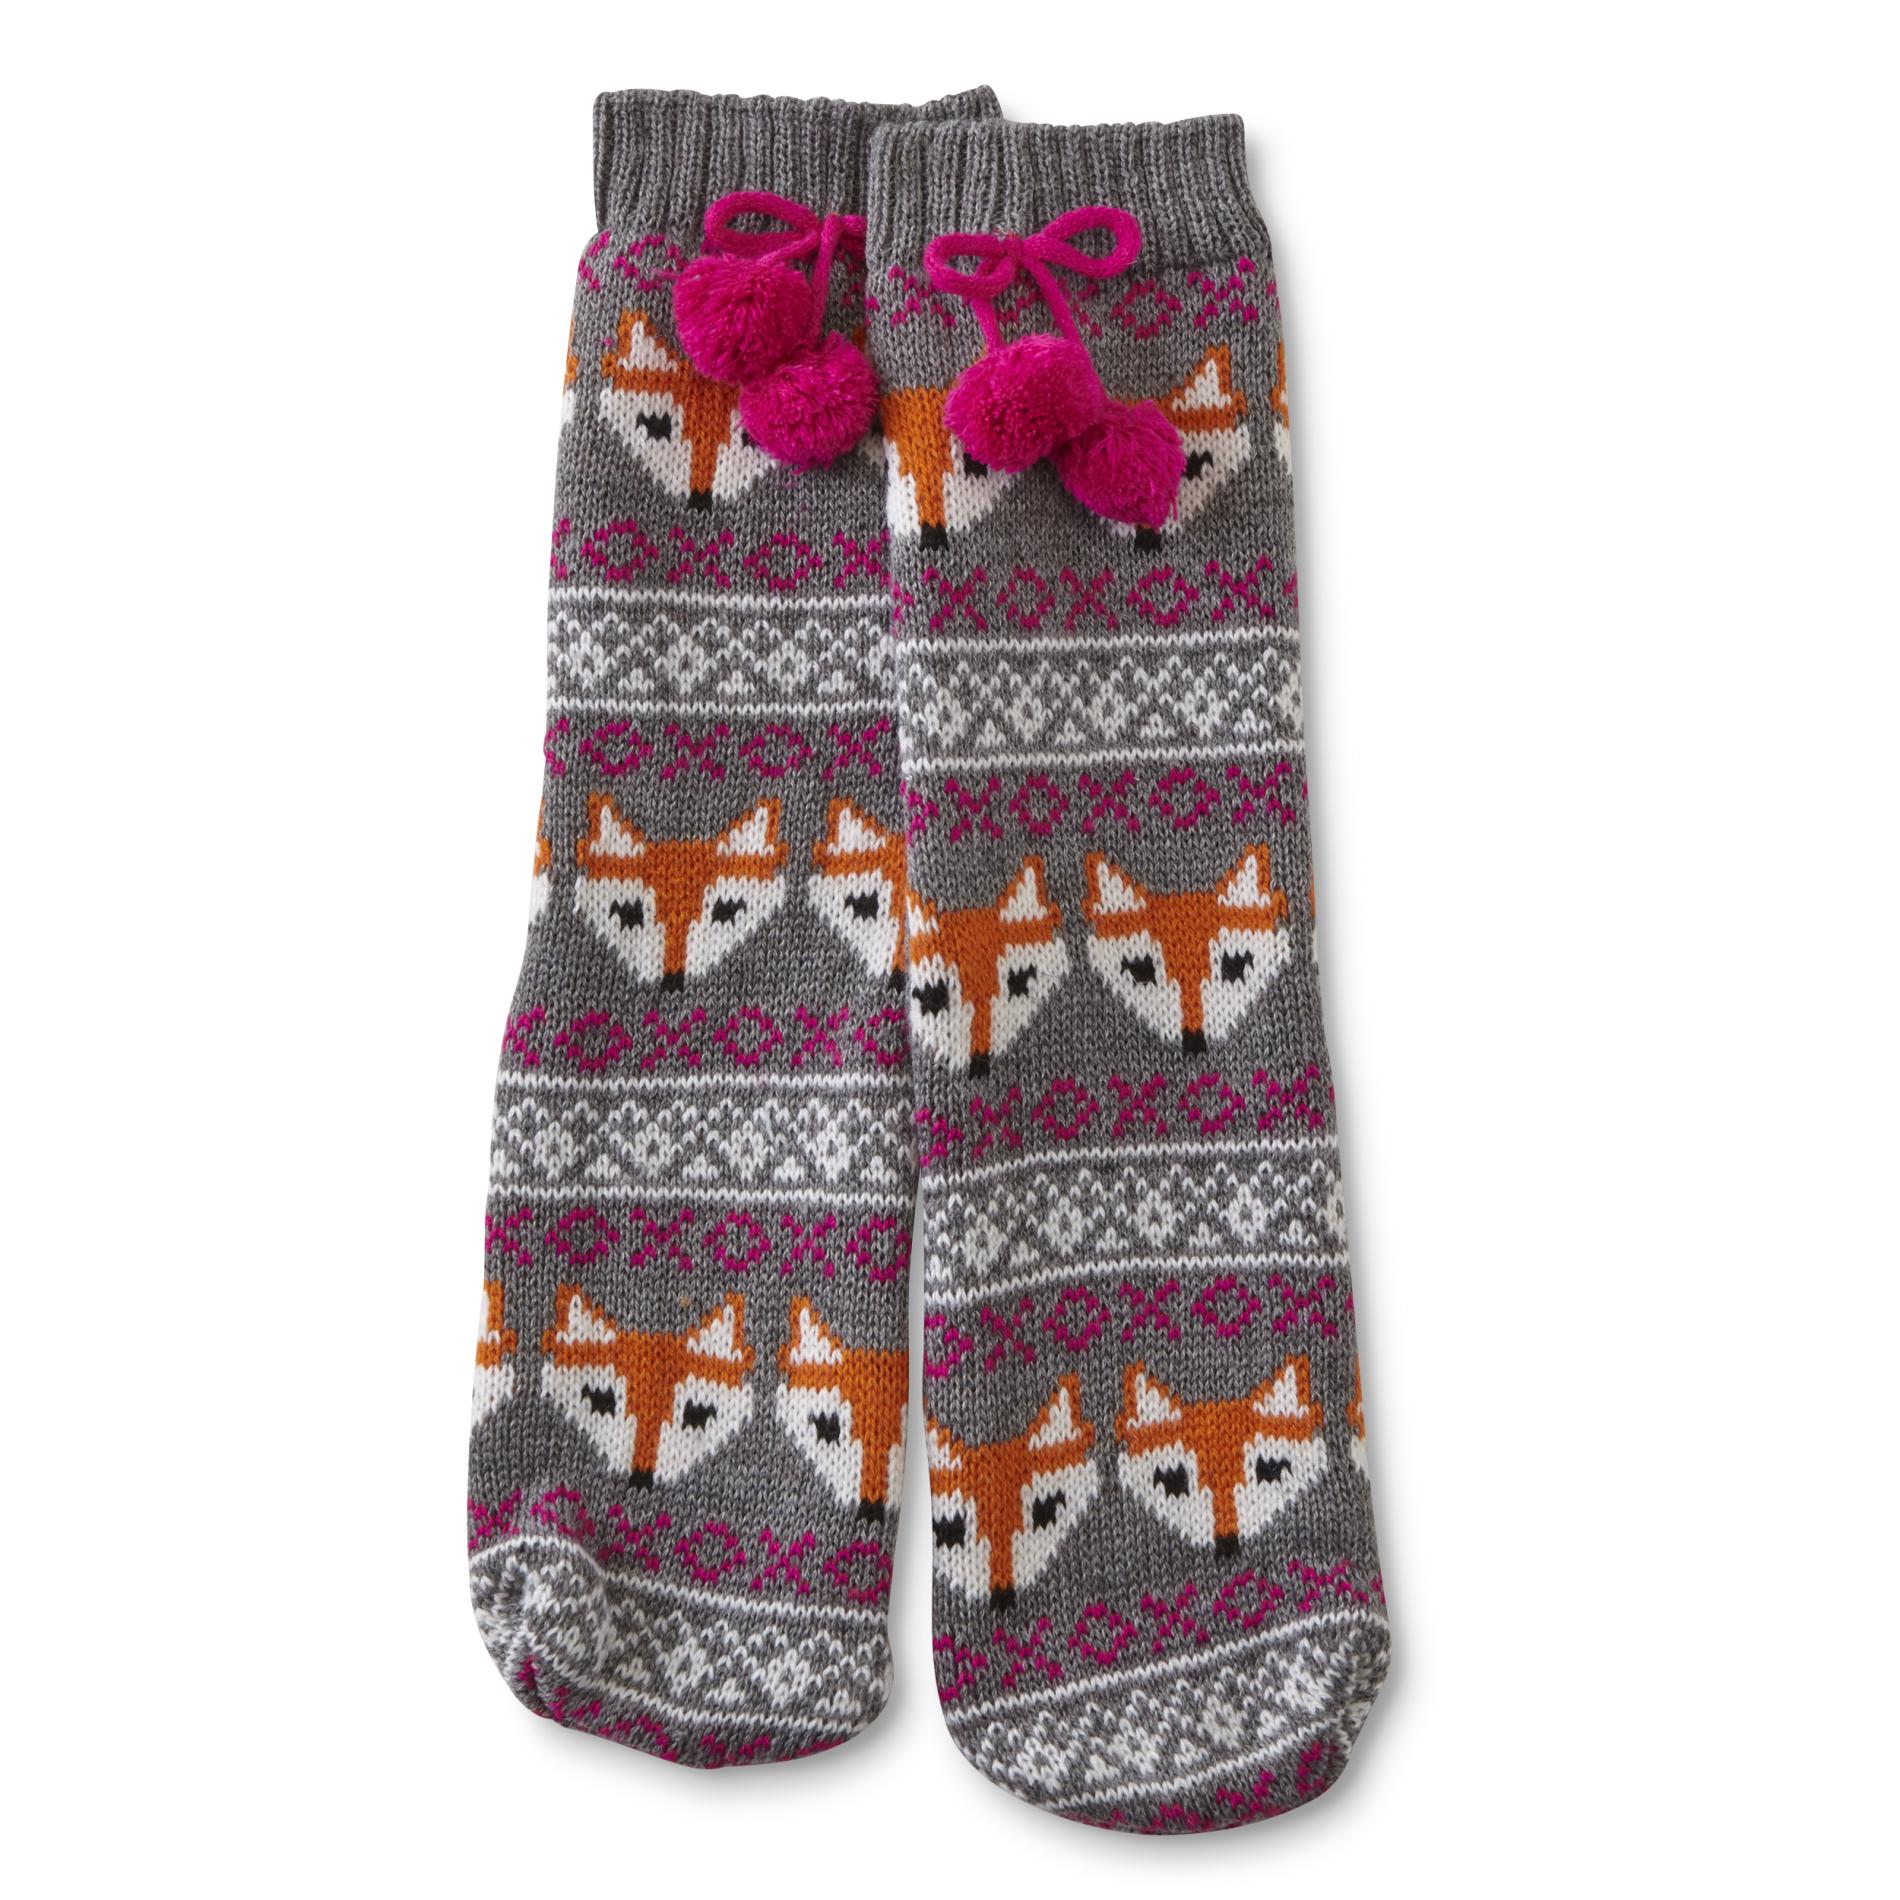 Joe Boxer Girls' Slipper Socks - Argyle & Foxes